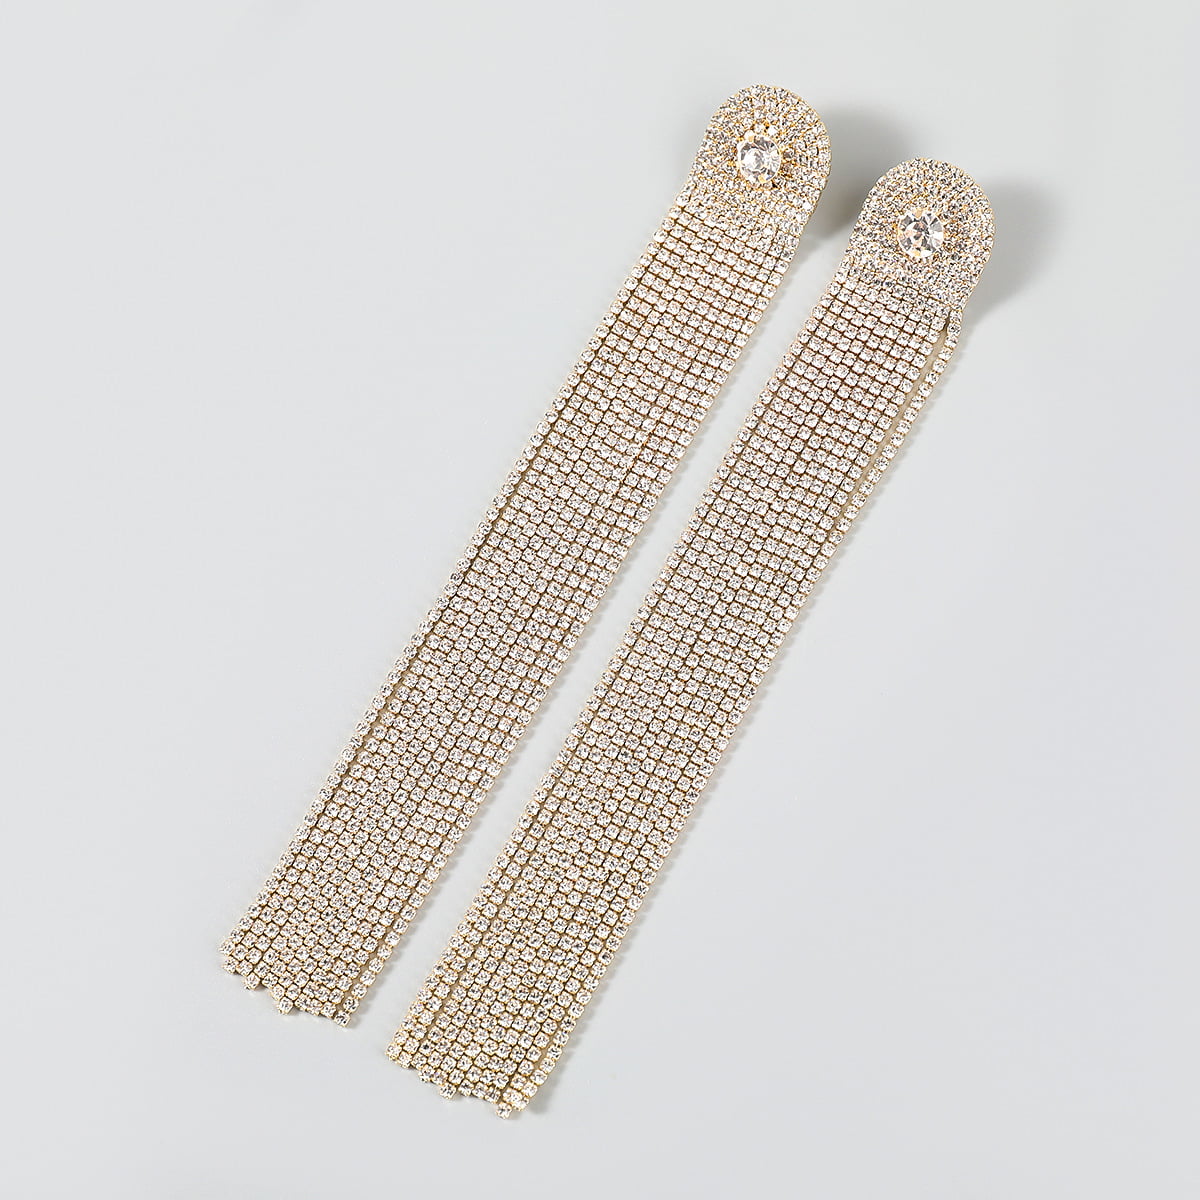 Flower Tassel Earrings Big Rhinestones Pendant Crystal. – Fiona Secret  Closet